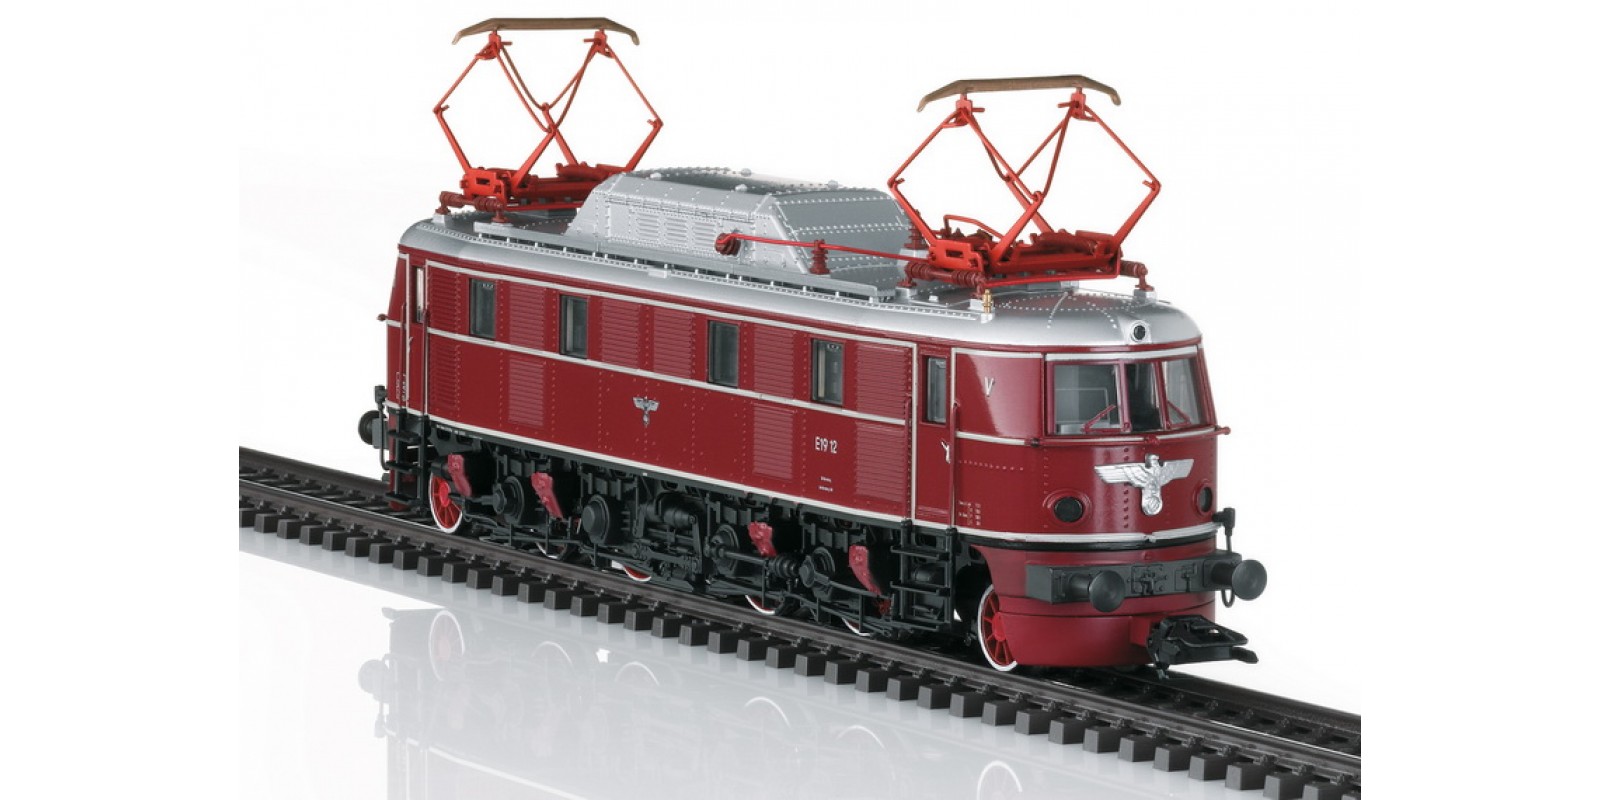 39193 Class E 19.1 Electric Locomotive